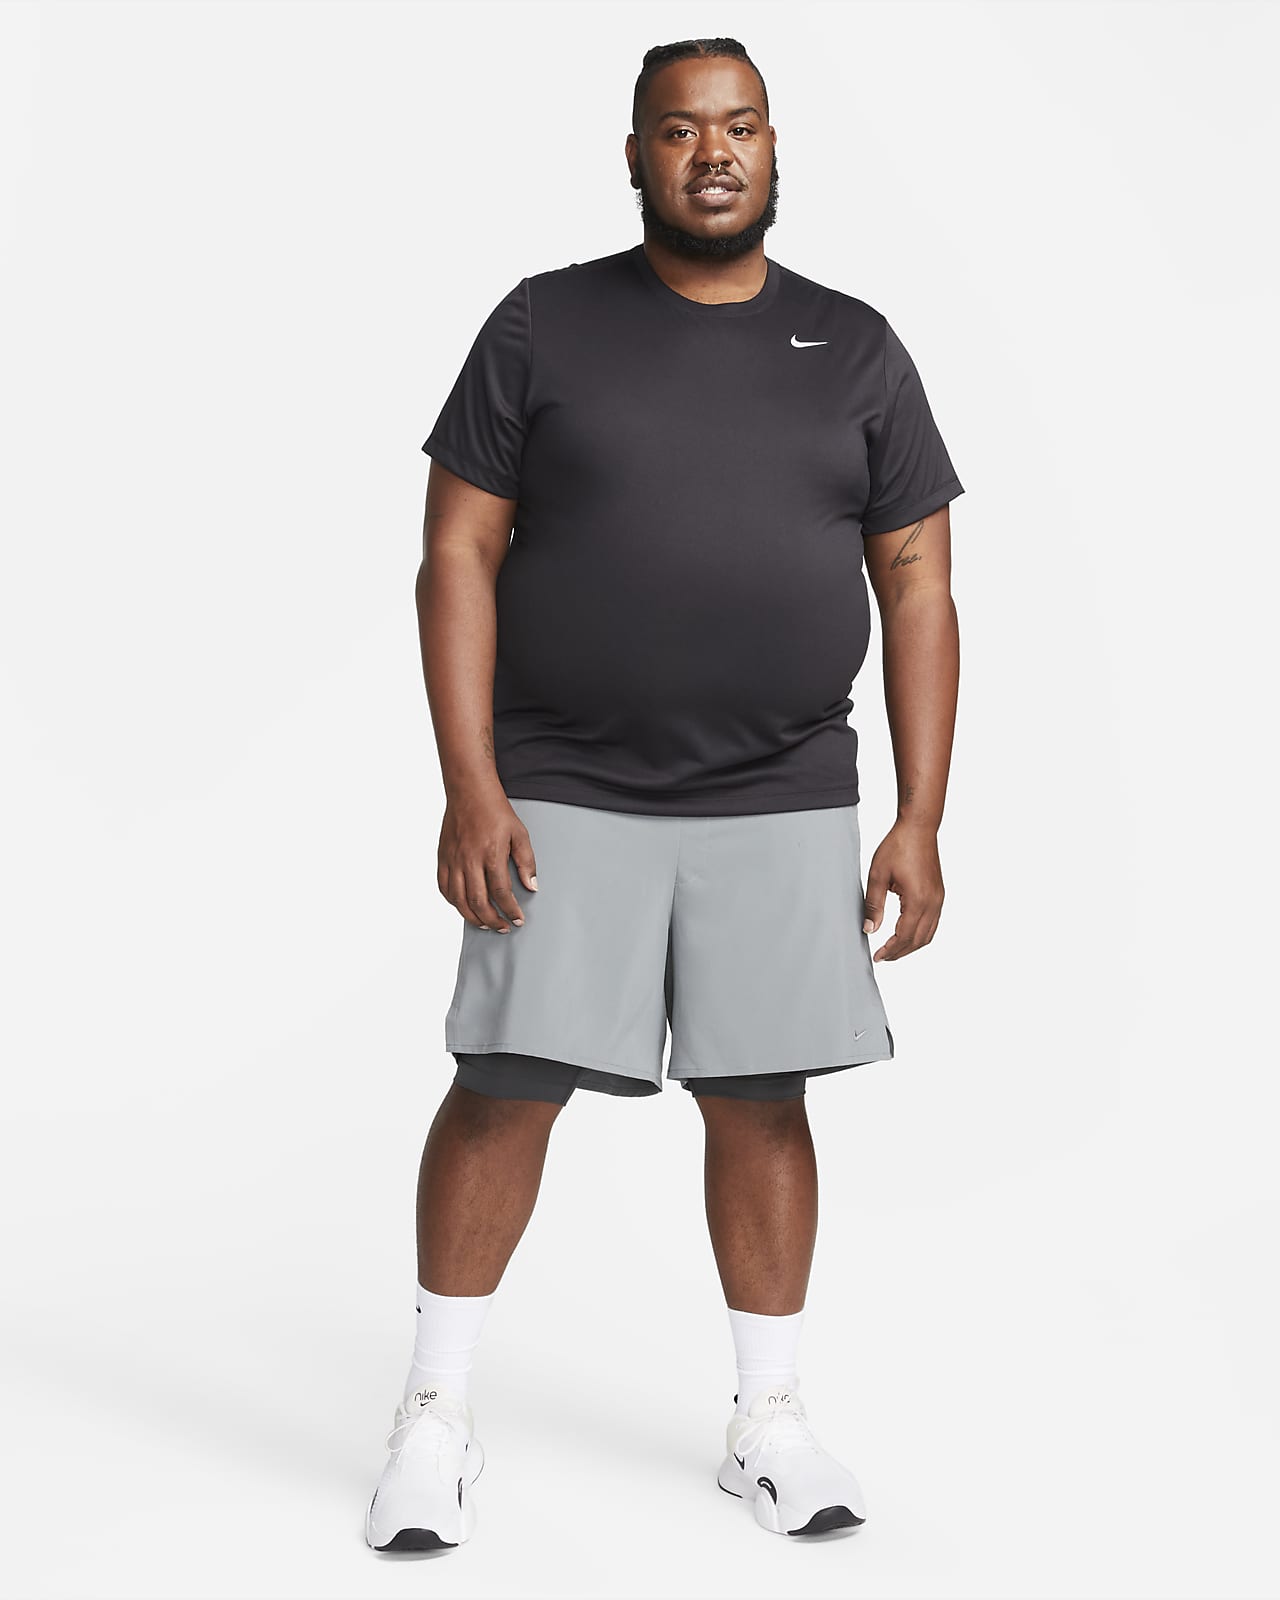 Shorts Nike Dri-FIT Go Plus Size - Feminino